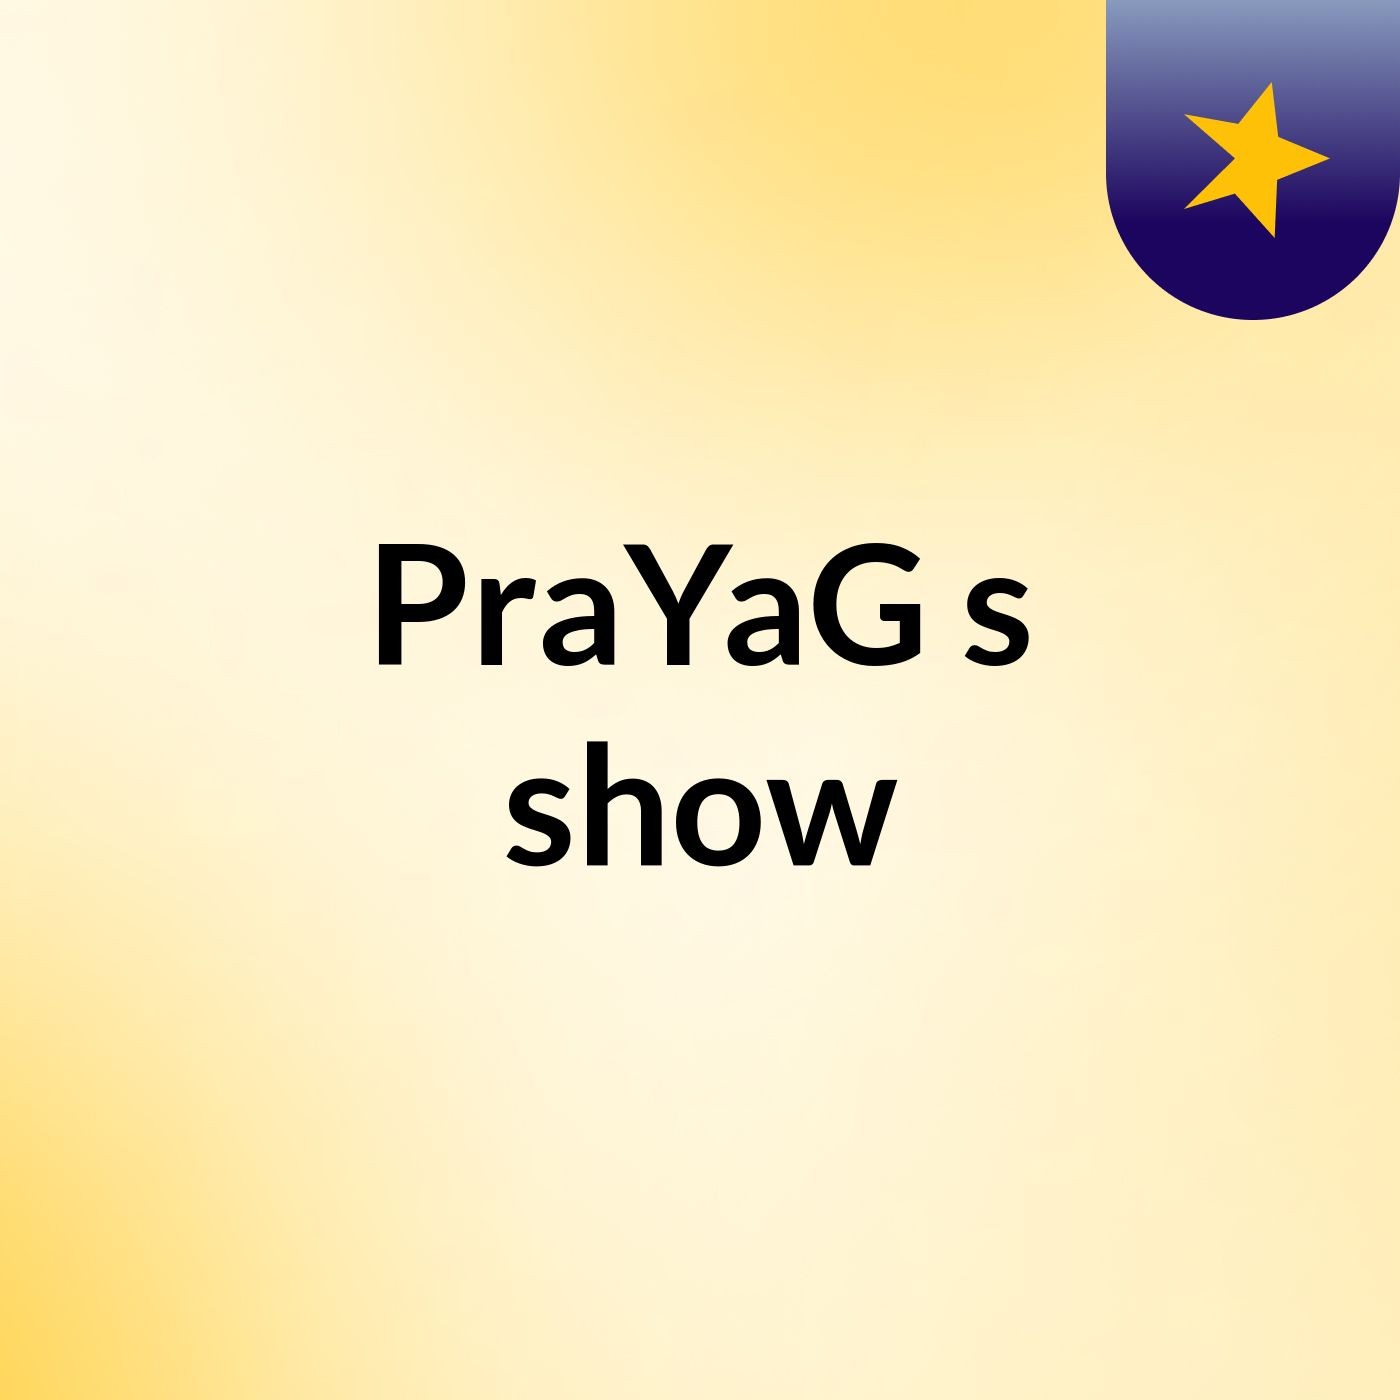 PraYaG's show